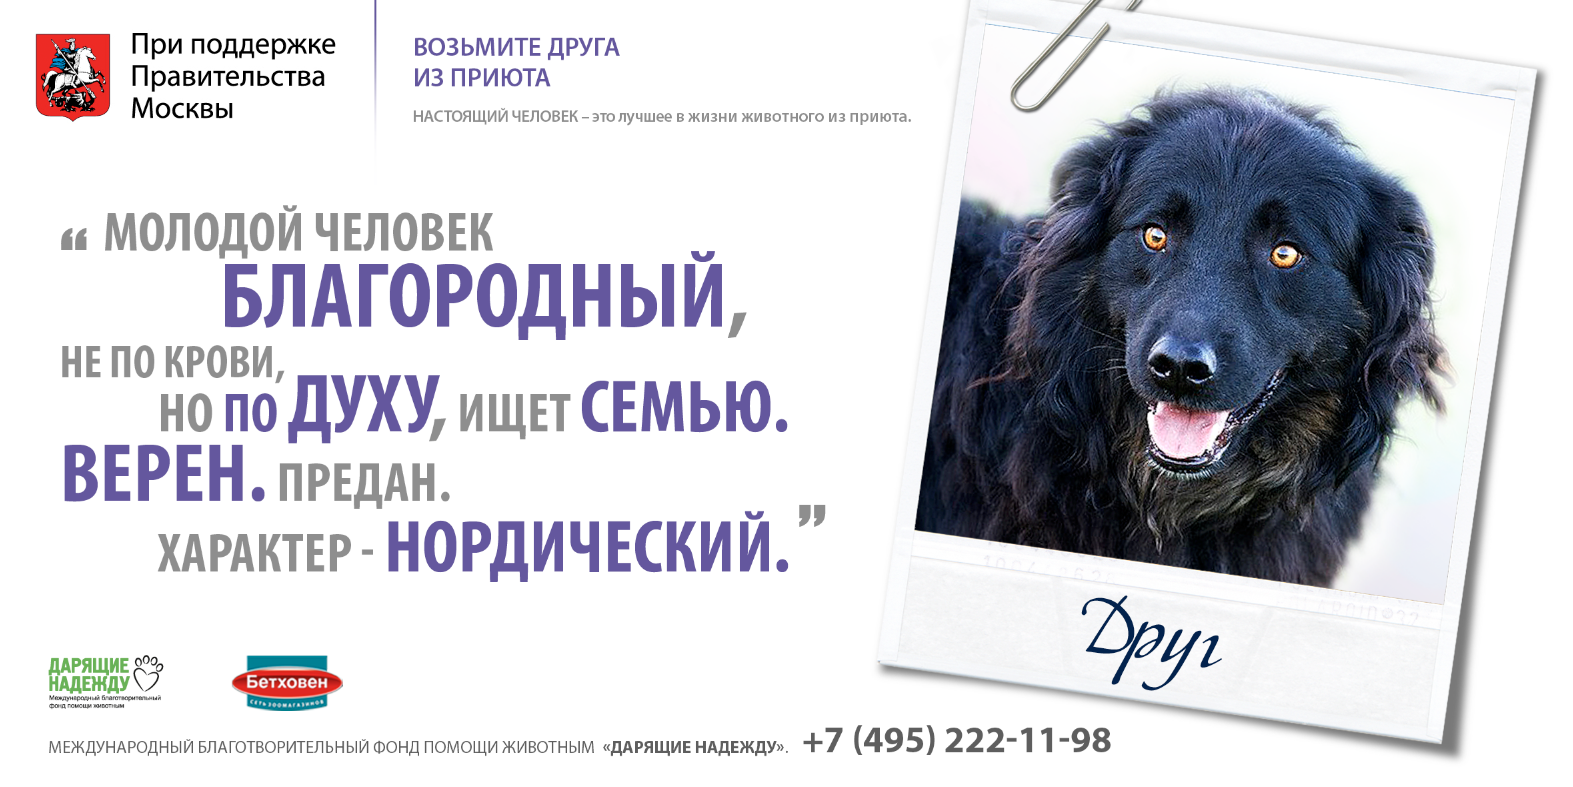 Книга попробуй возьми. Реклама приюта для животных. Социальная реклама приюта для животных. Реклама приюта для собак. Реклама приюта для бездомных животных.